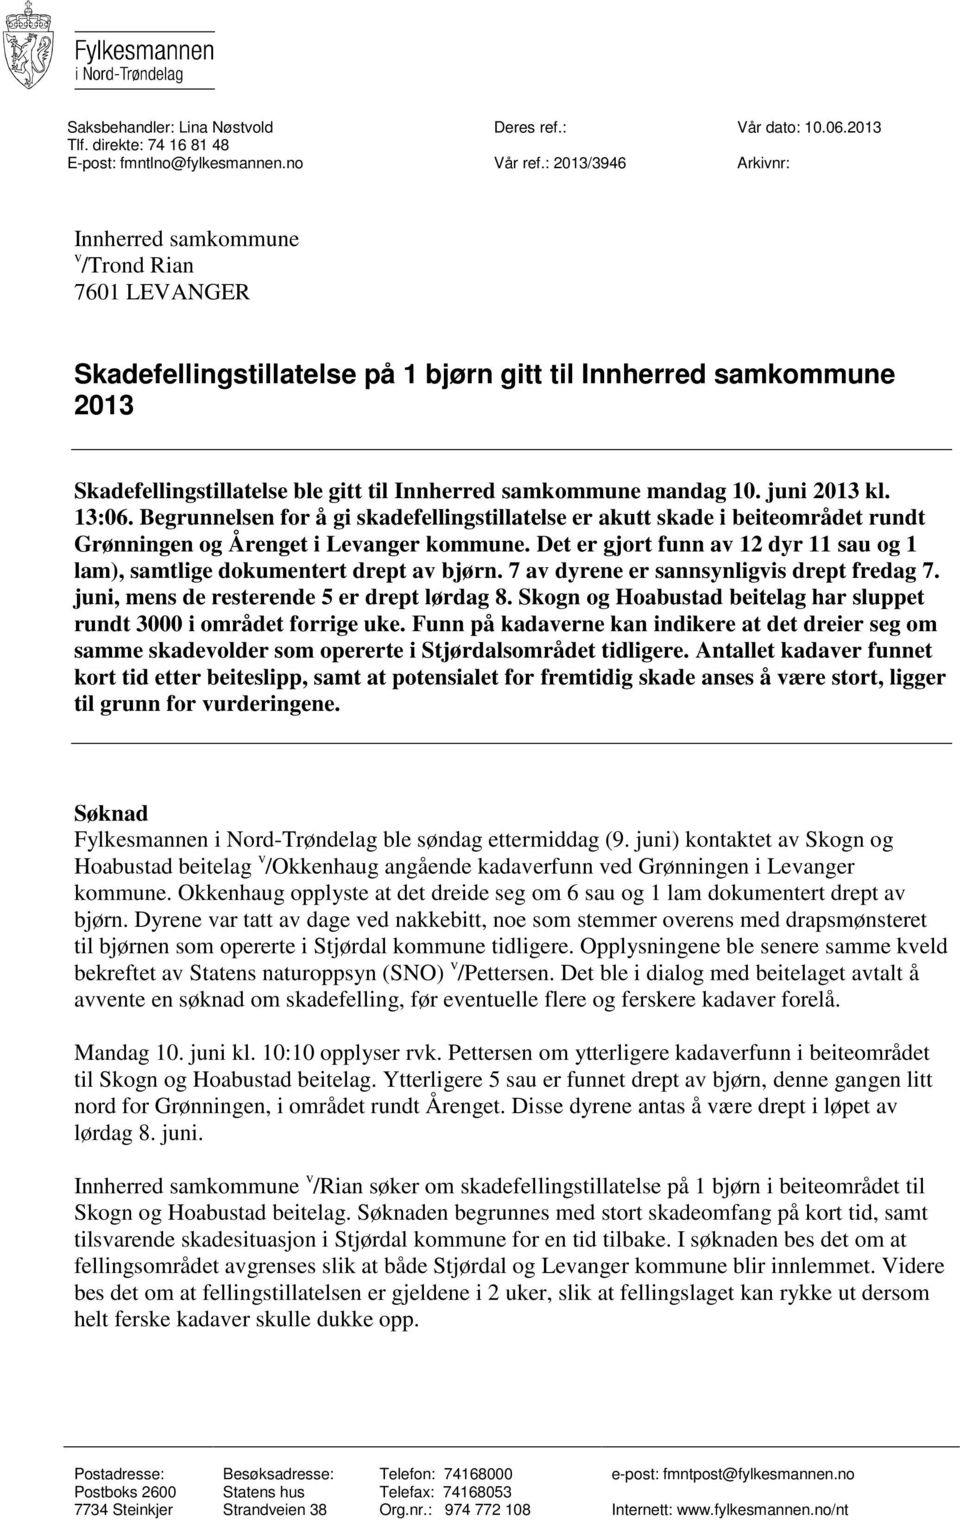 mandag 10. juni 2013 kl. 13:06. Begrunnelsen for å gi skadefellingstillatelse er akutt skade i beiteområdet rundt Grønningen og Årenget i Levanger kommune.